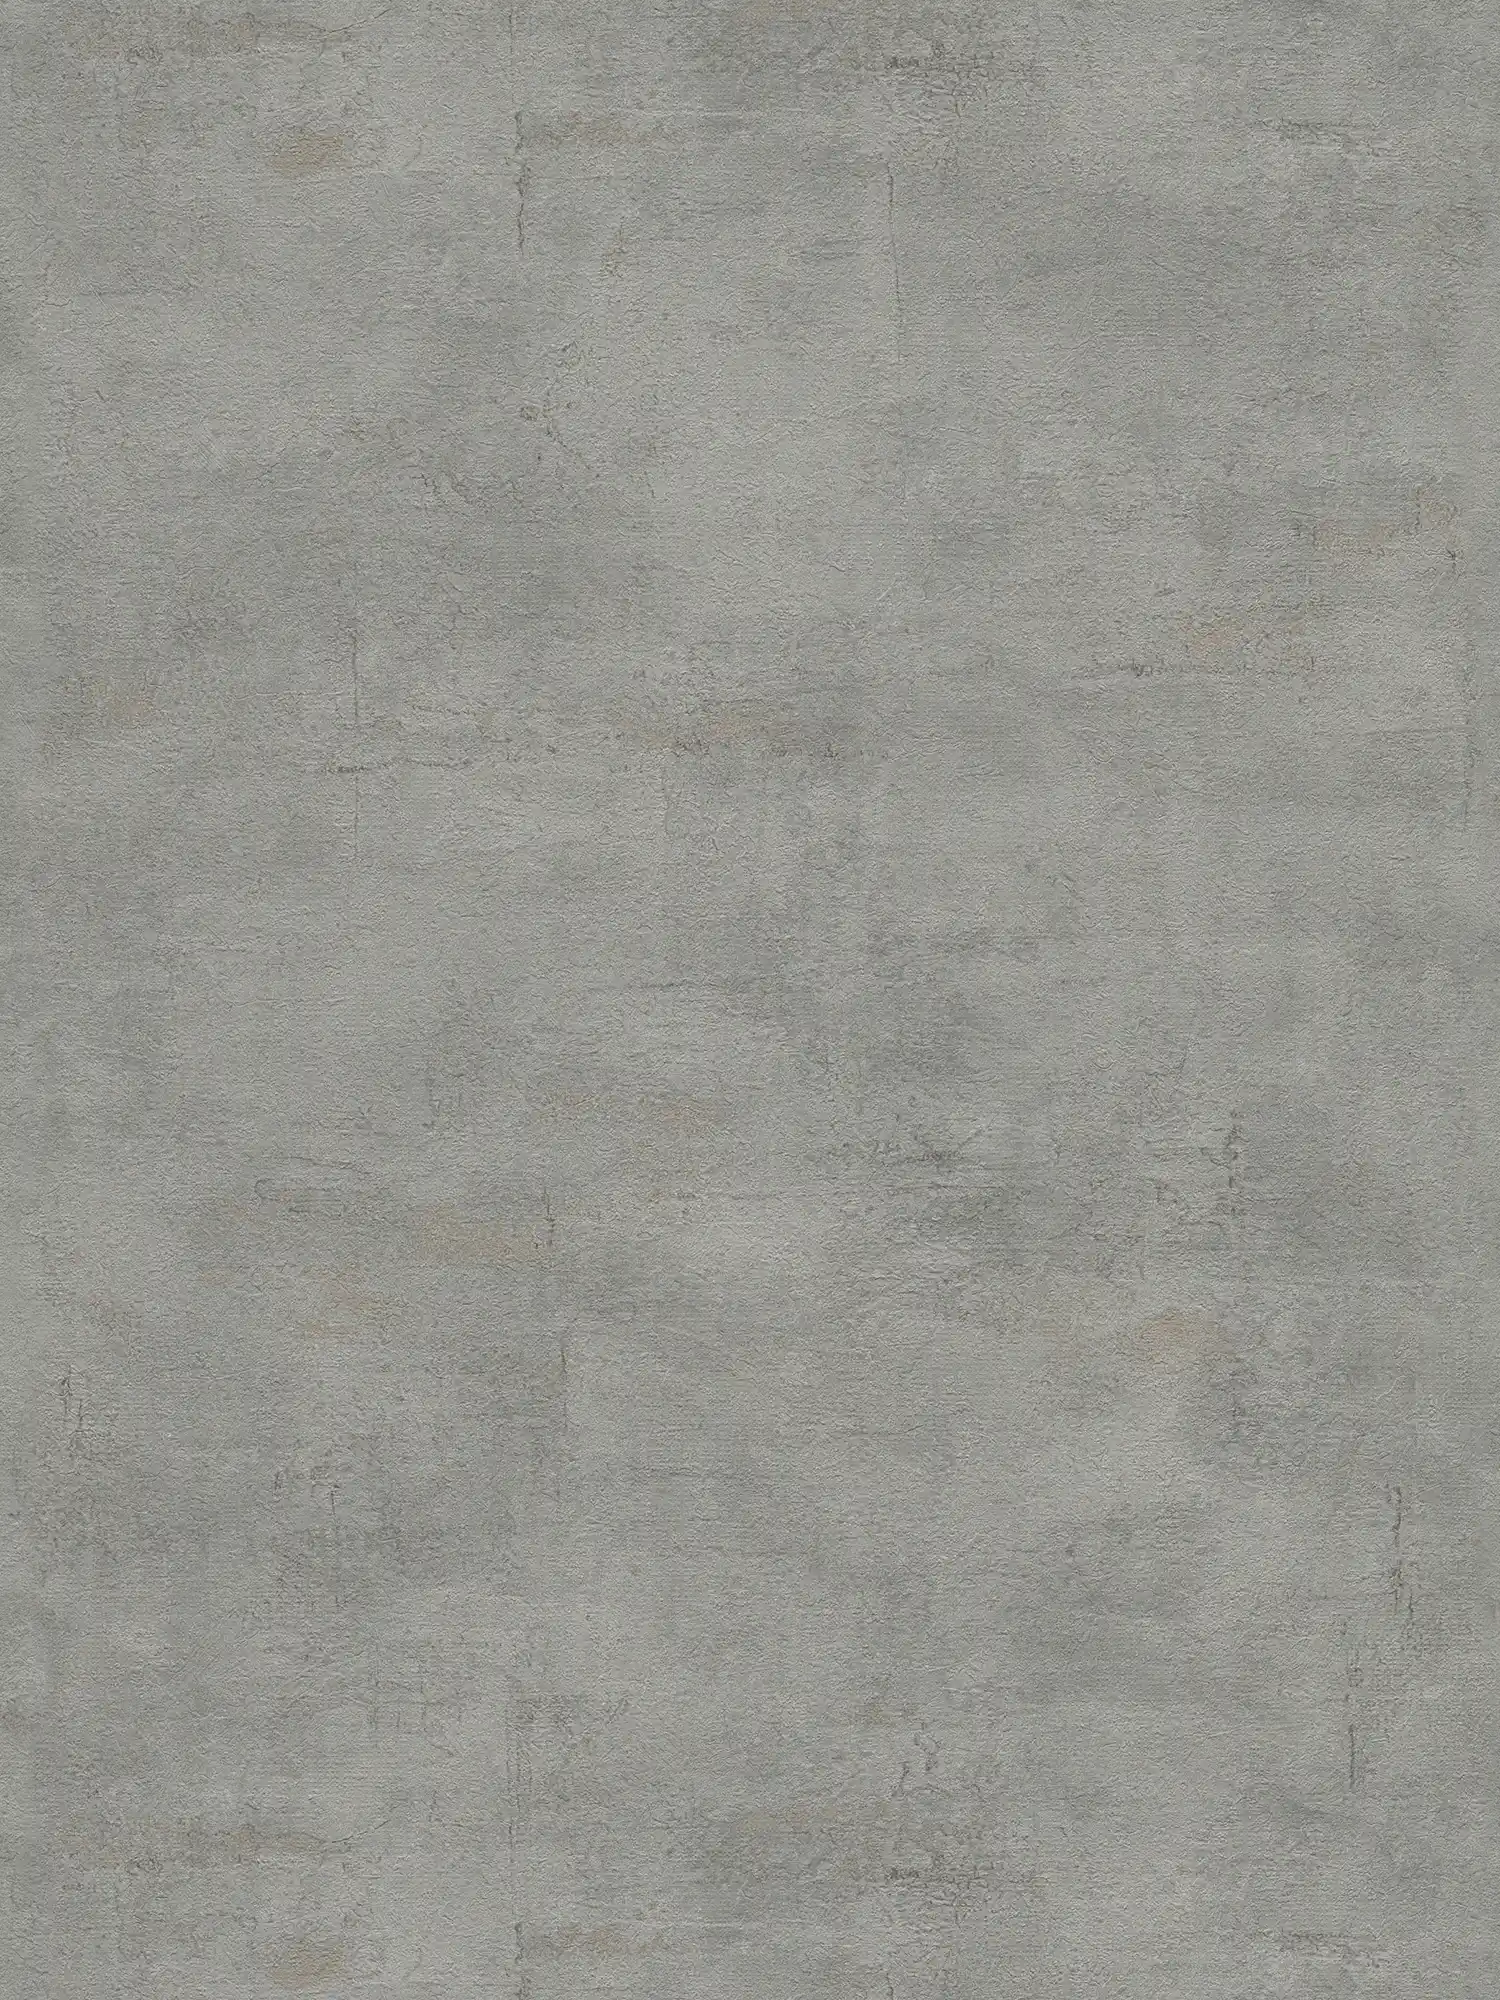 Textured wallpaper with dark grey plaster look - grey
